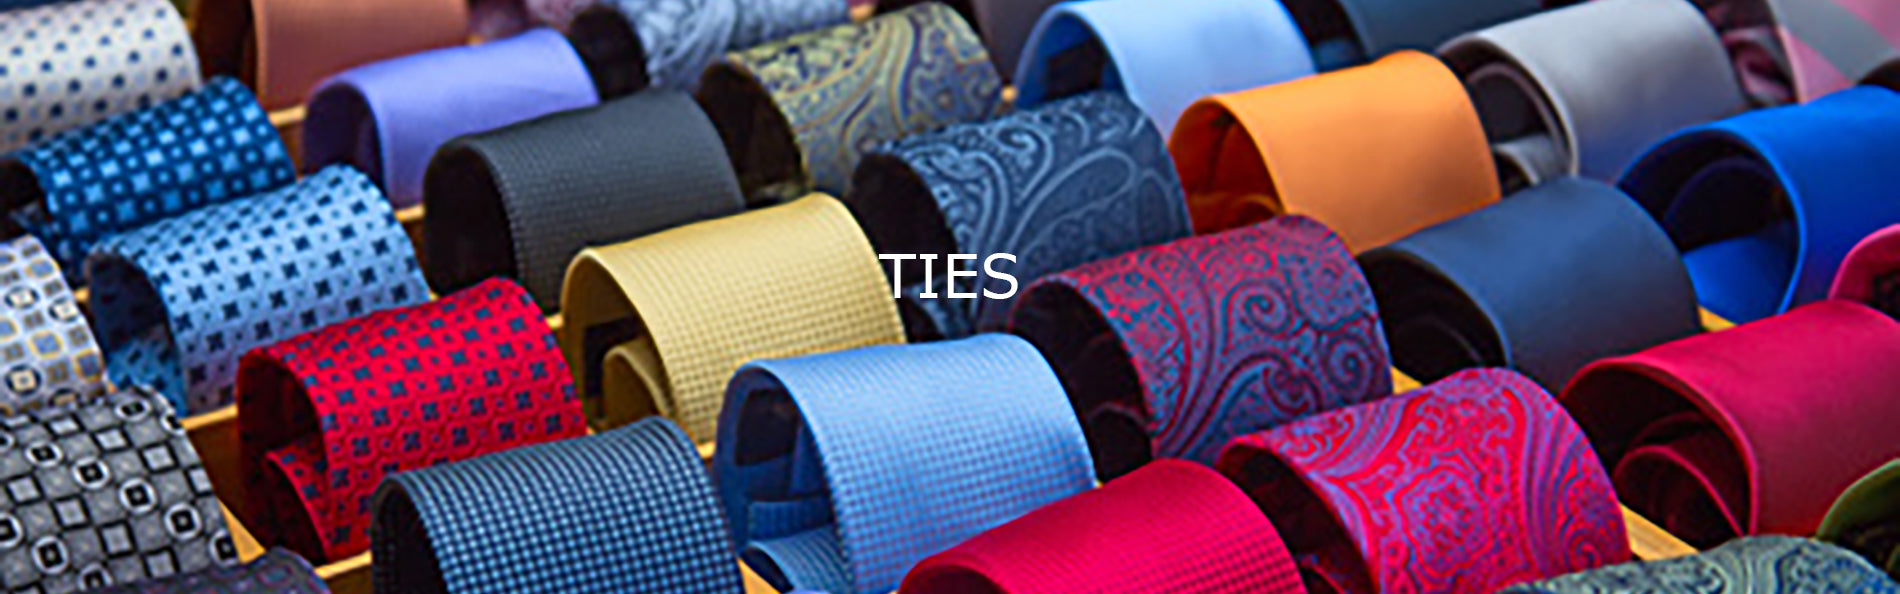 Ties on Sale , Shop Neckties